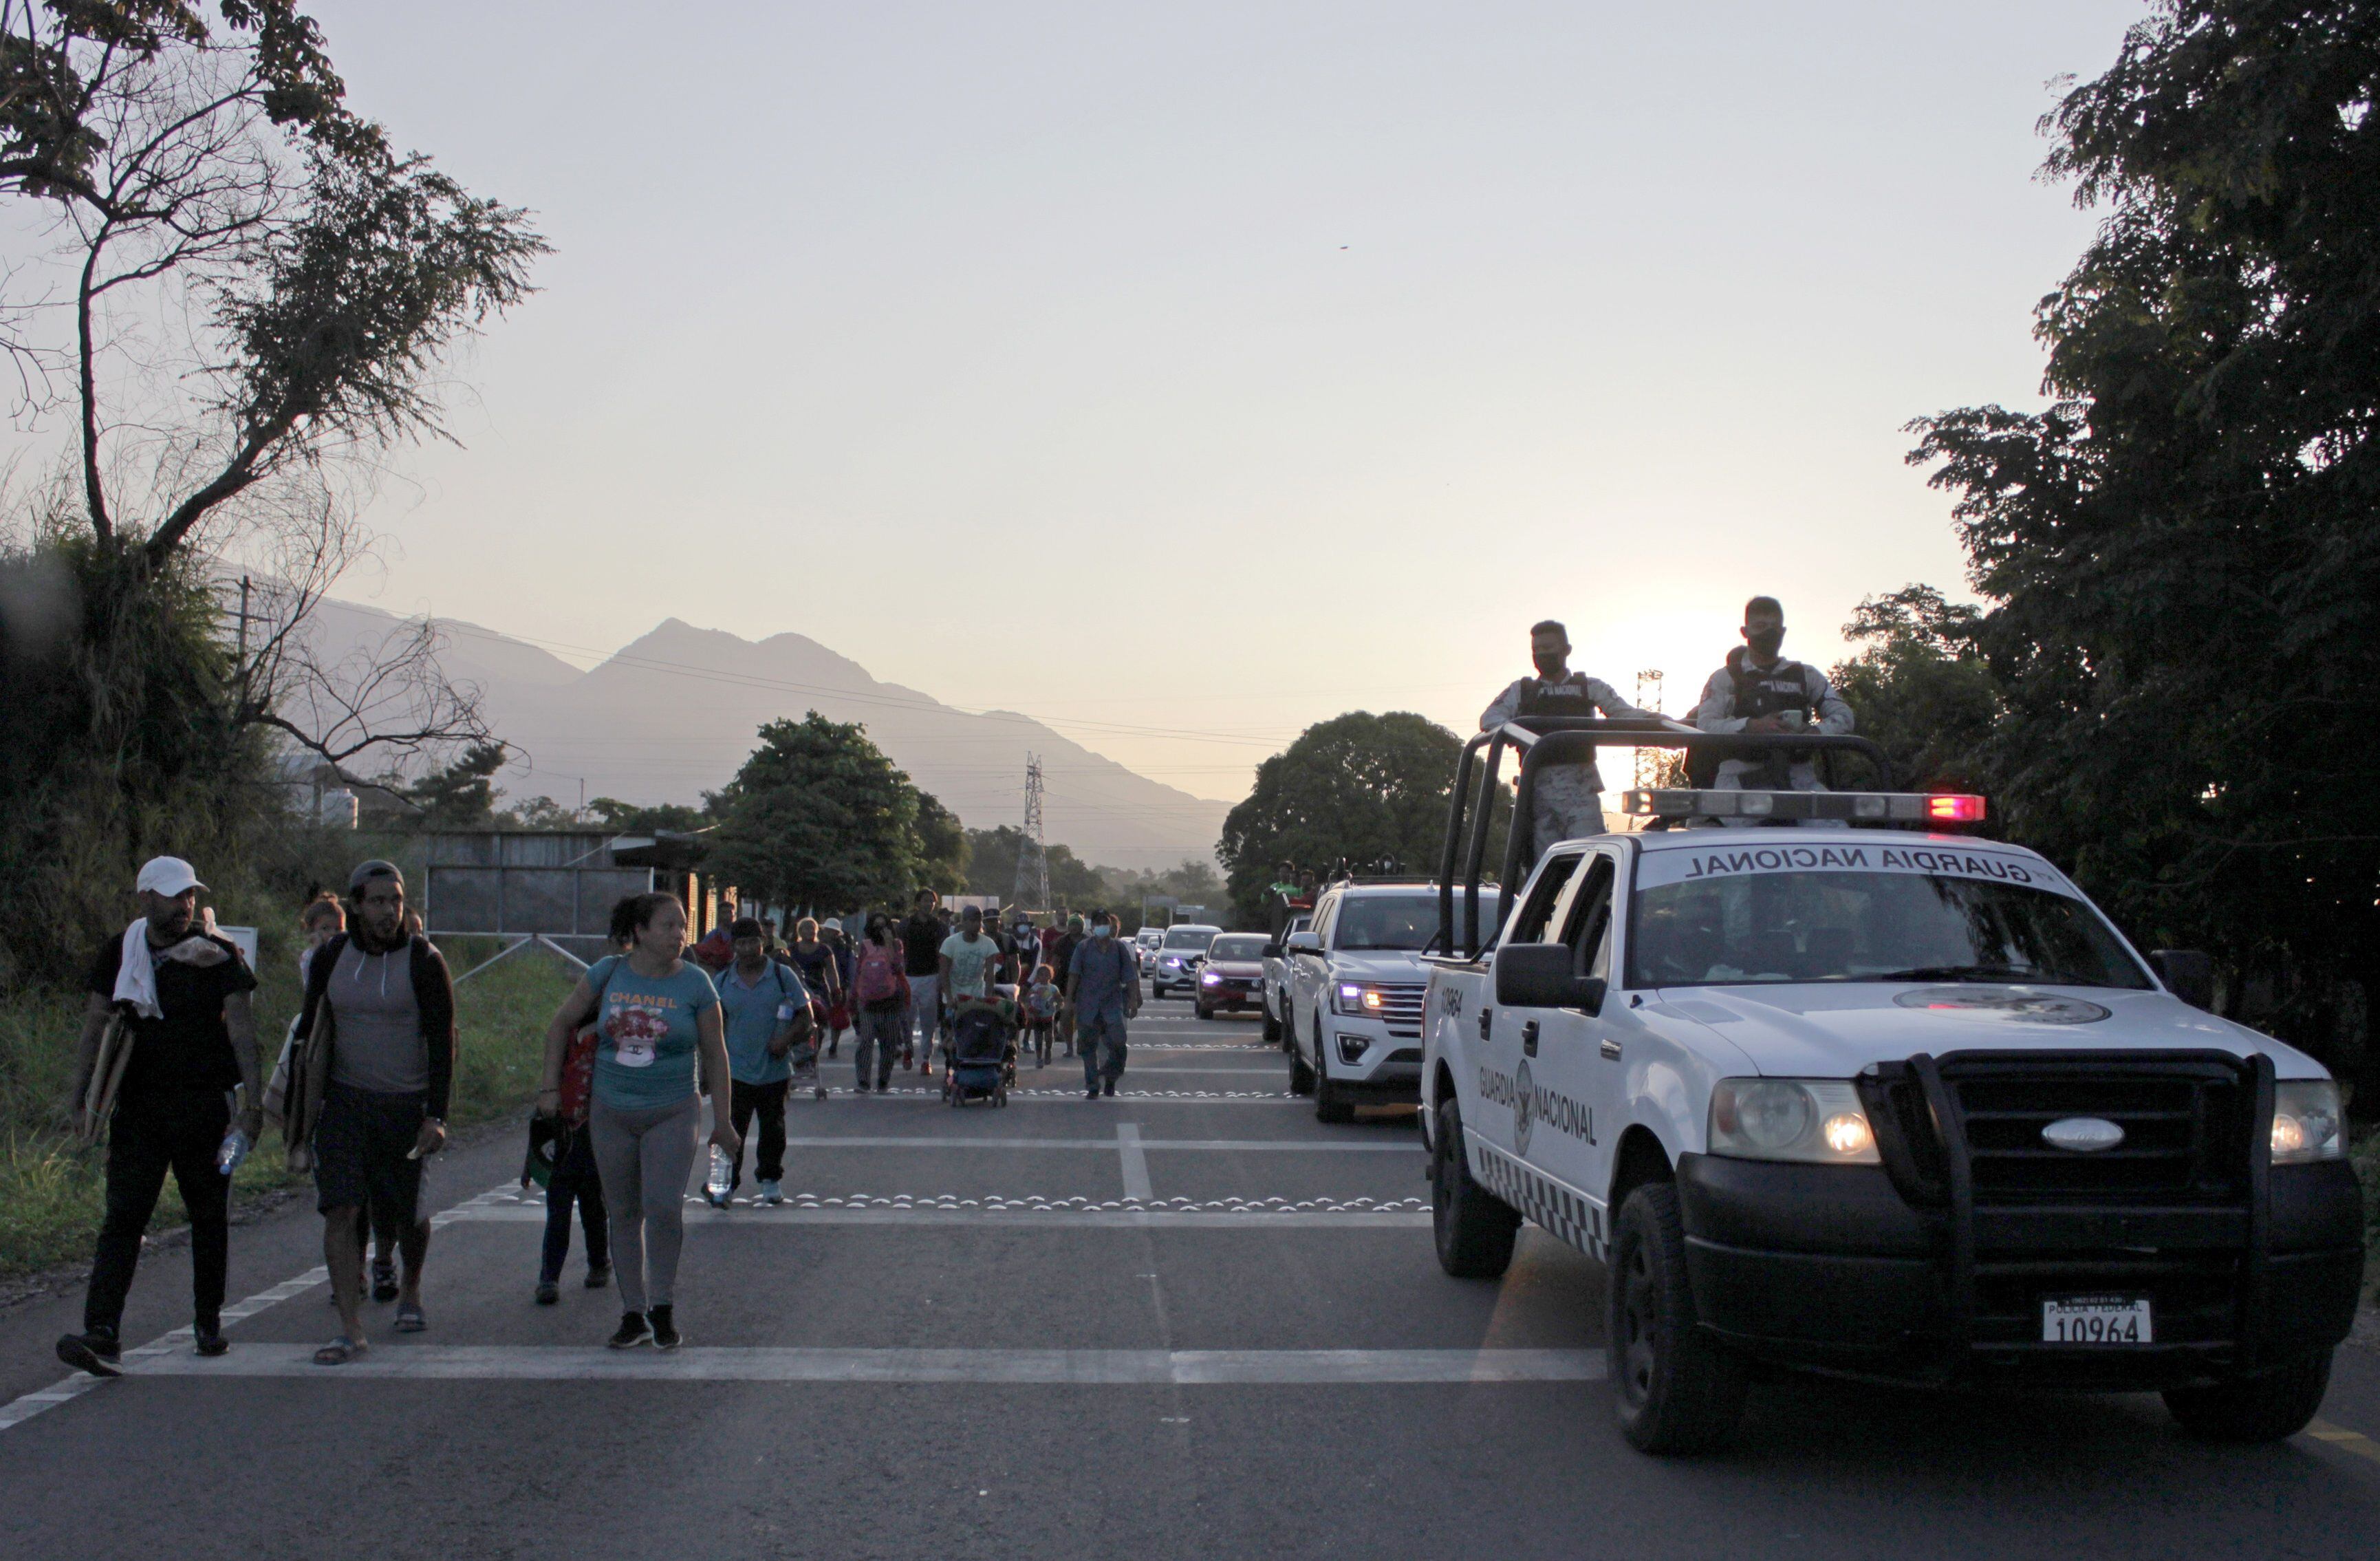 Migrantes caminan en caravana en el Estado de Chiapas mientras son escoltados por miembros de la Guardia Nacional.